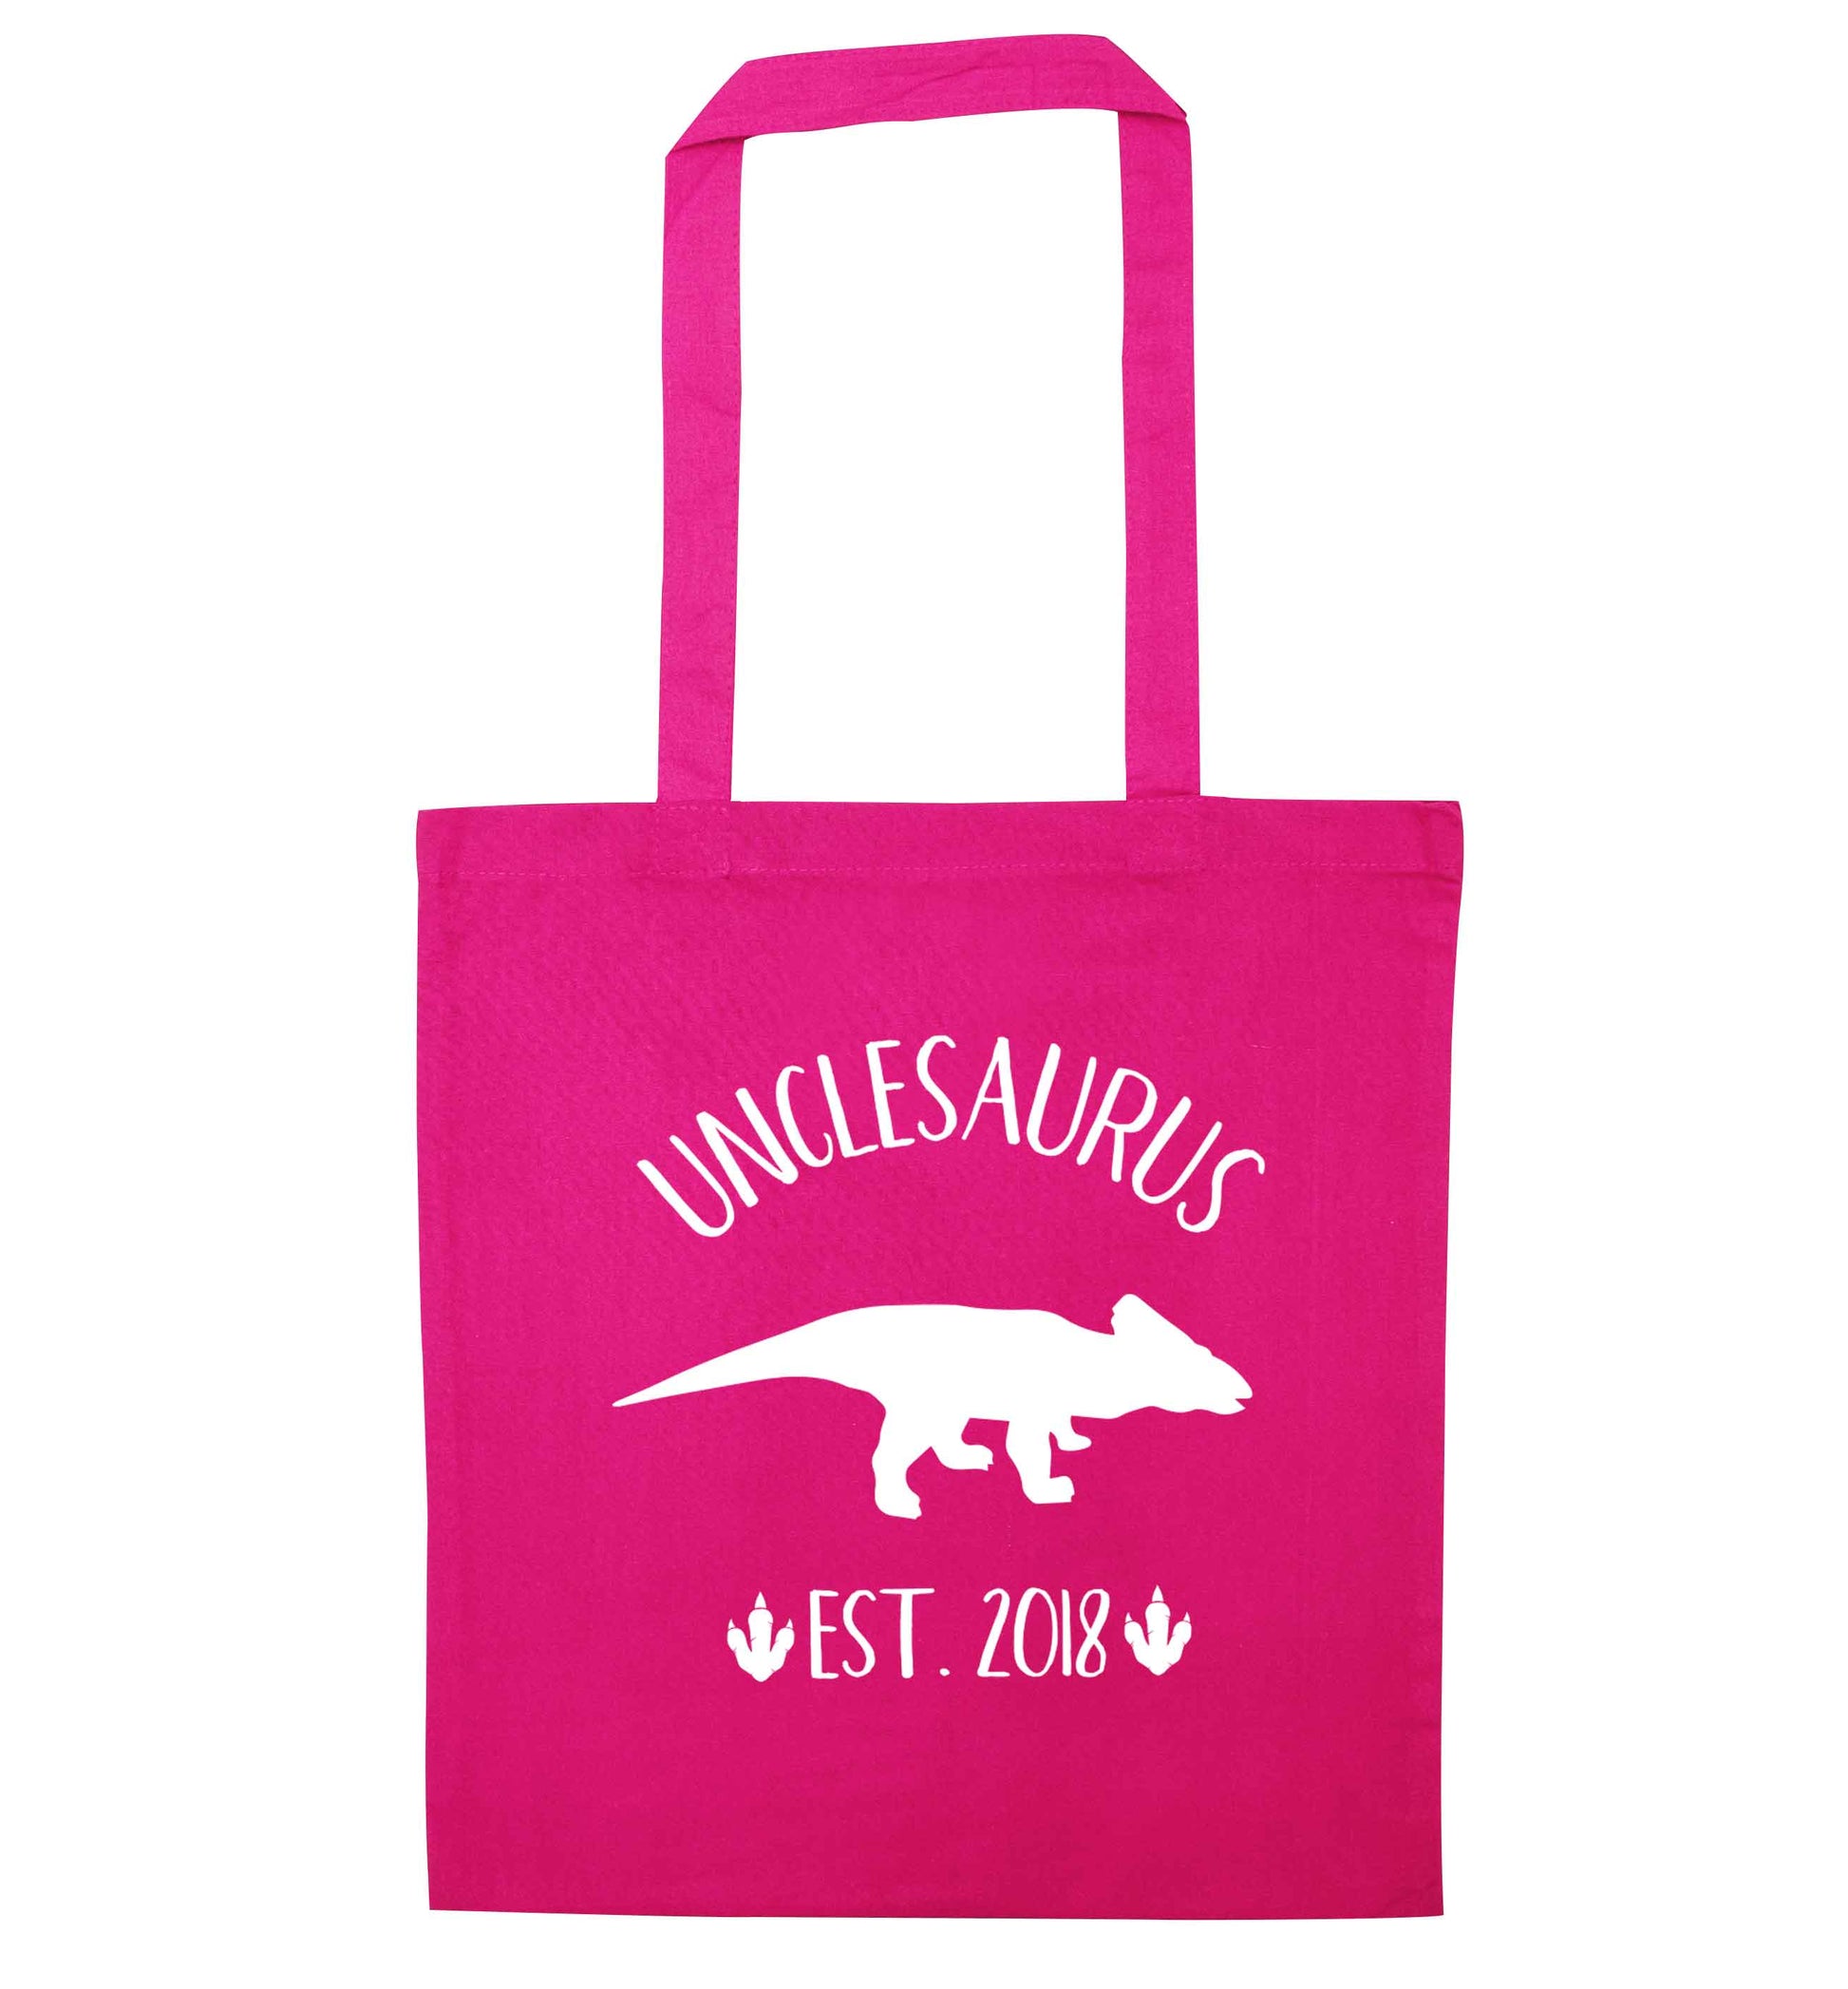 Personalised unclesaurus since (custom date) pink tote bag